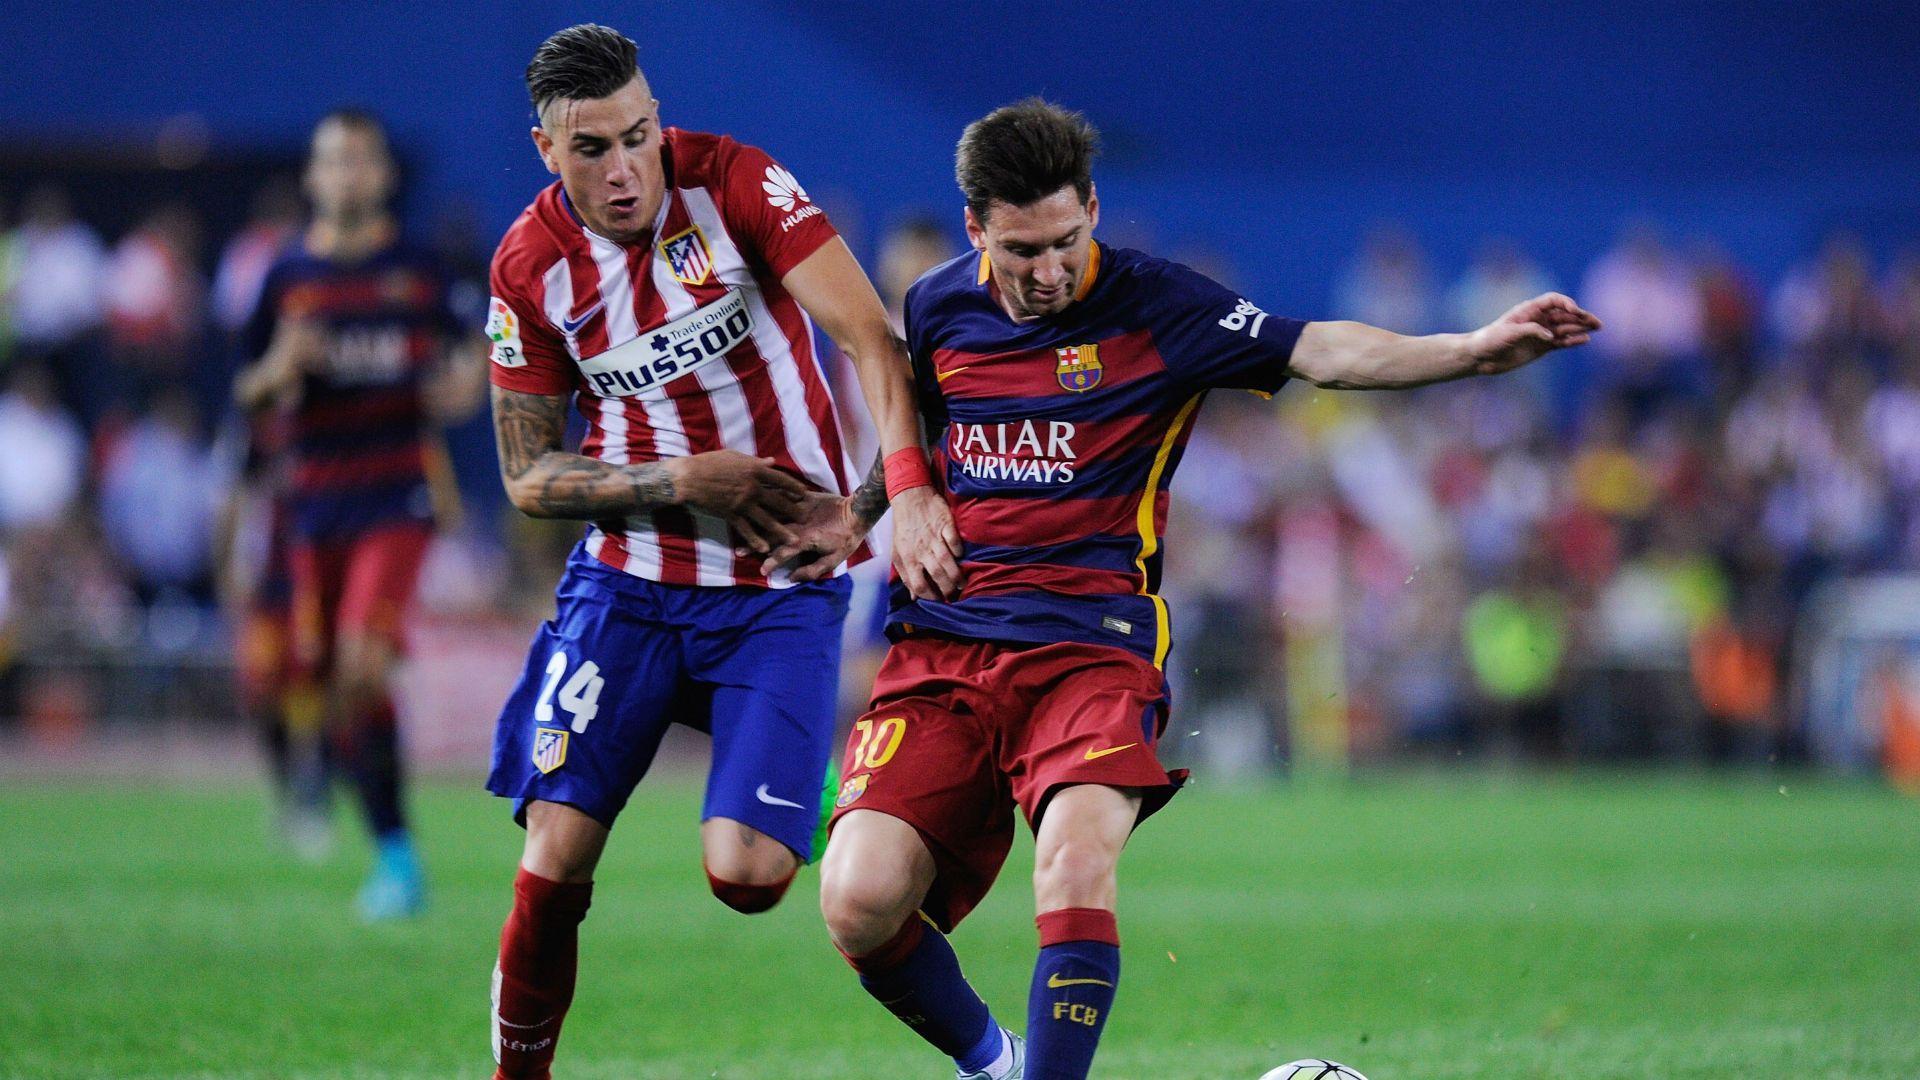 LaLiga: Gimenez primed for Messi duel in Barca v Atleti